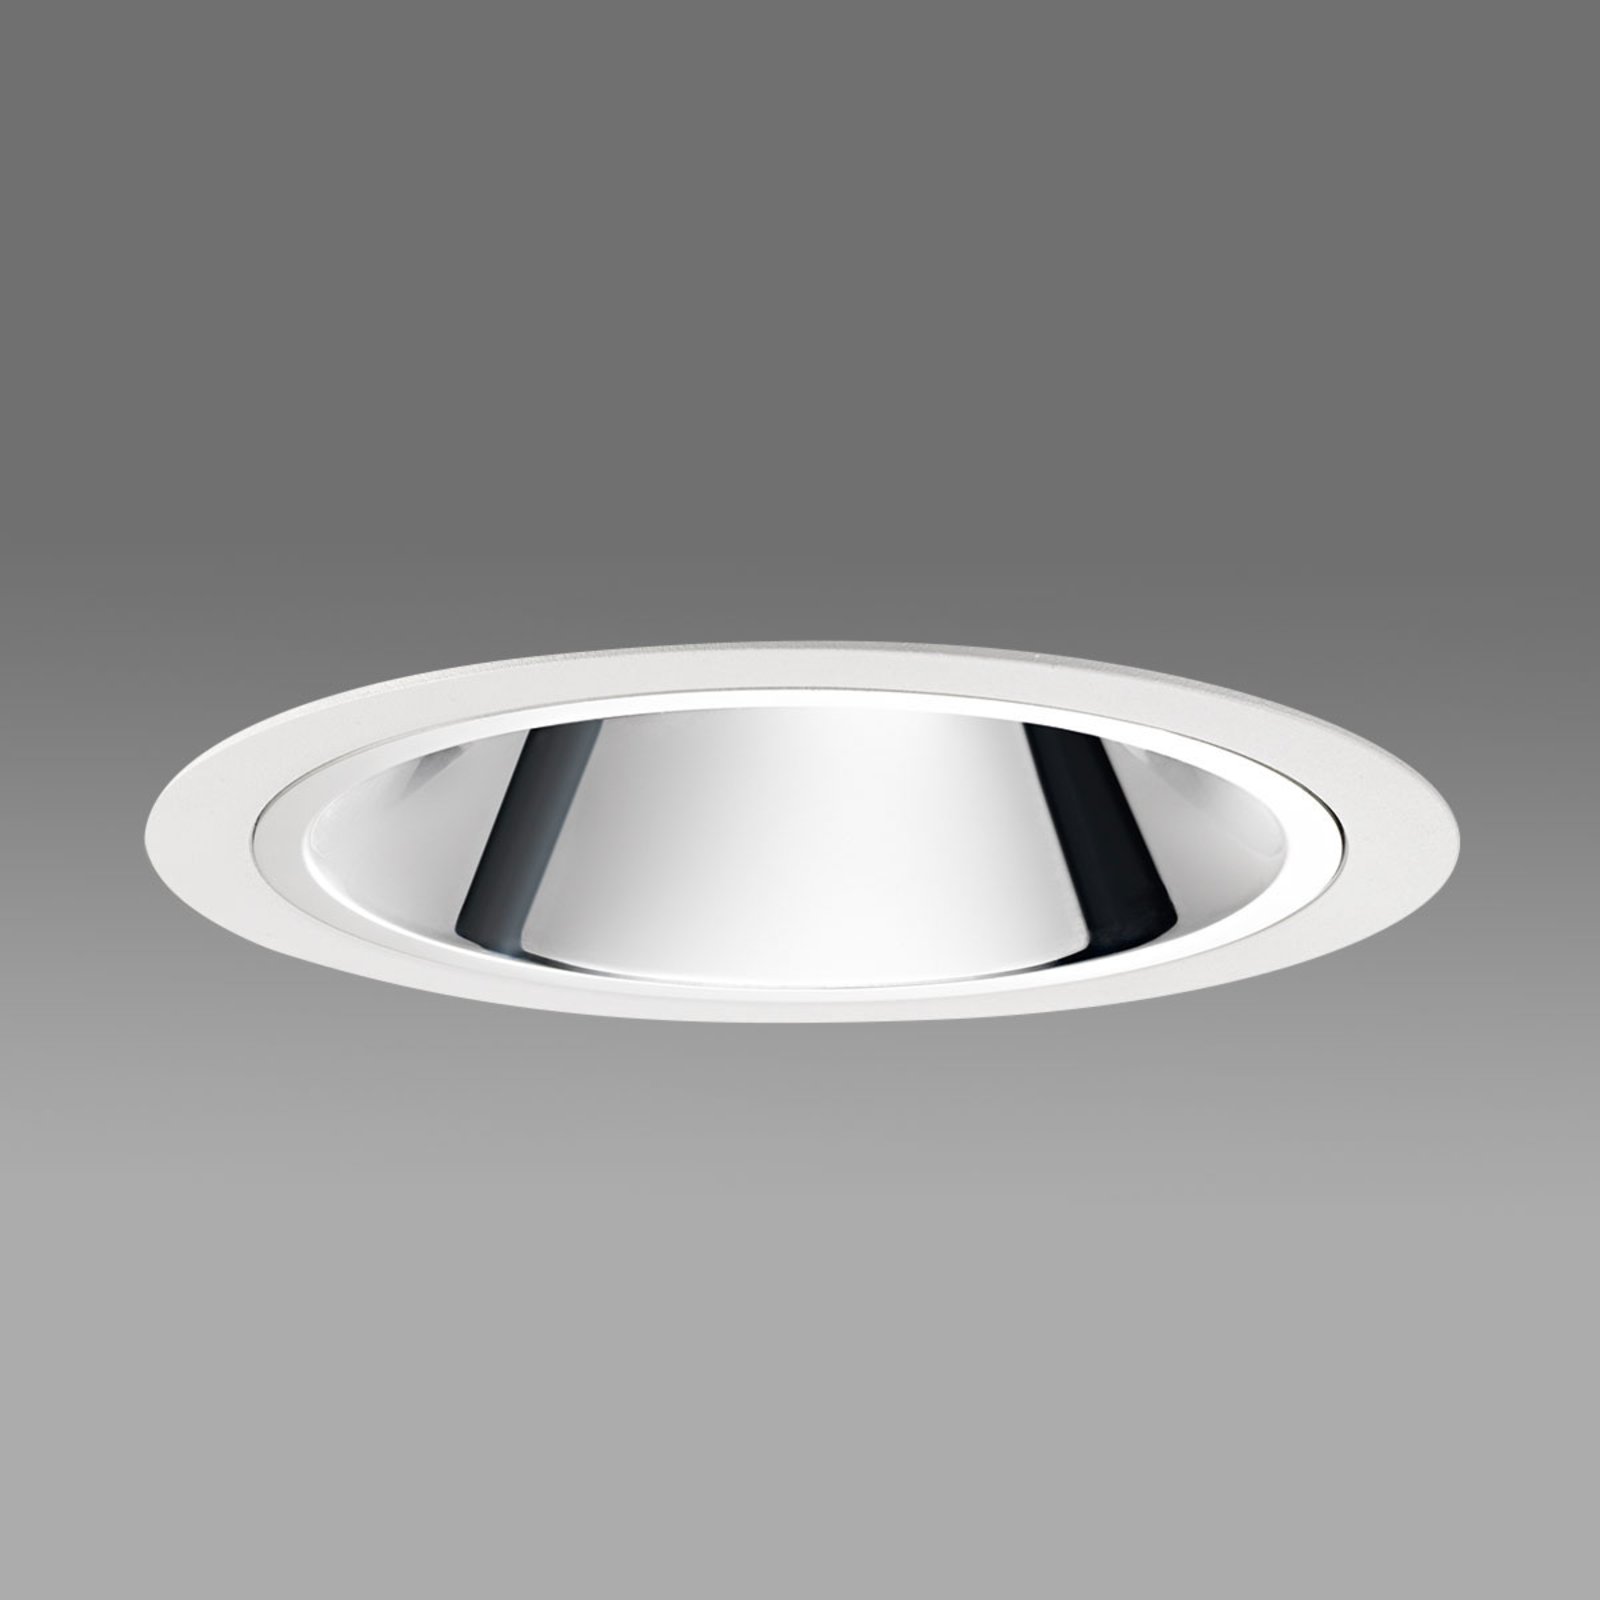 LED-downlight Centro – 69° utstrålingsvinkel